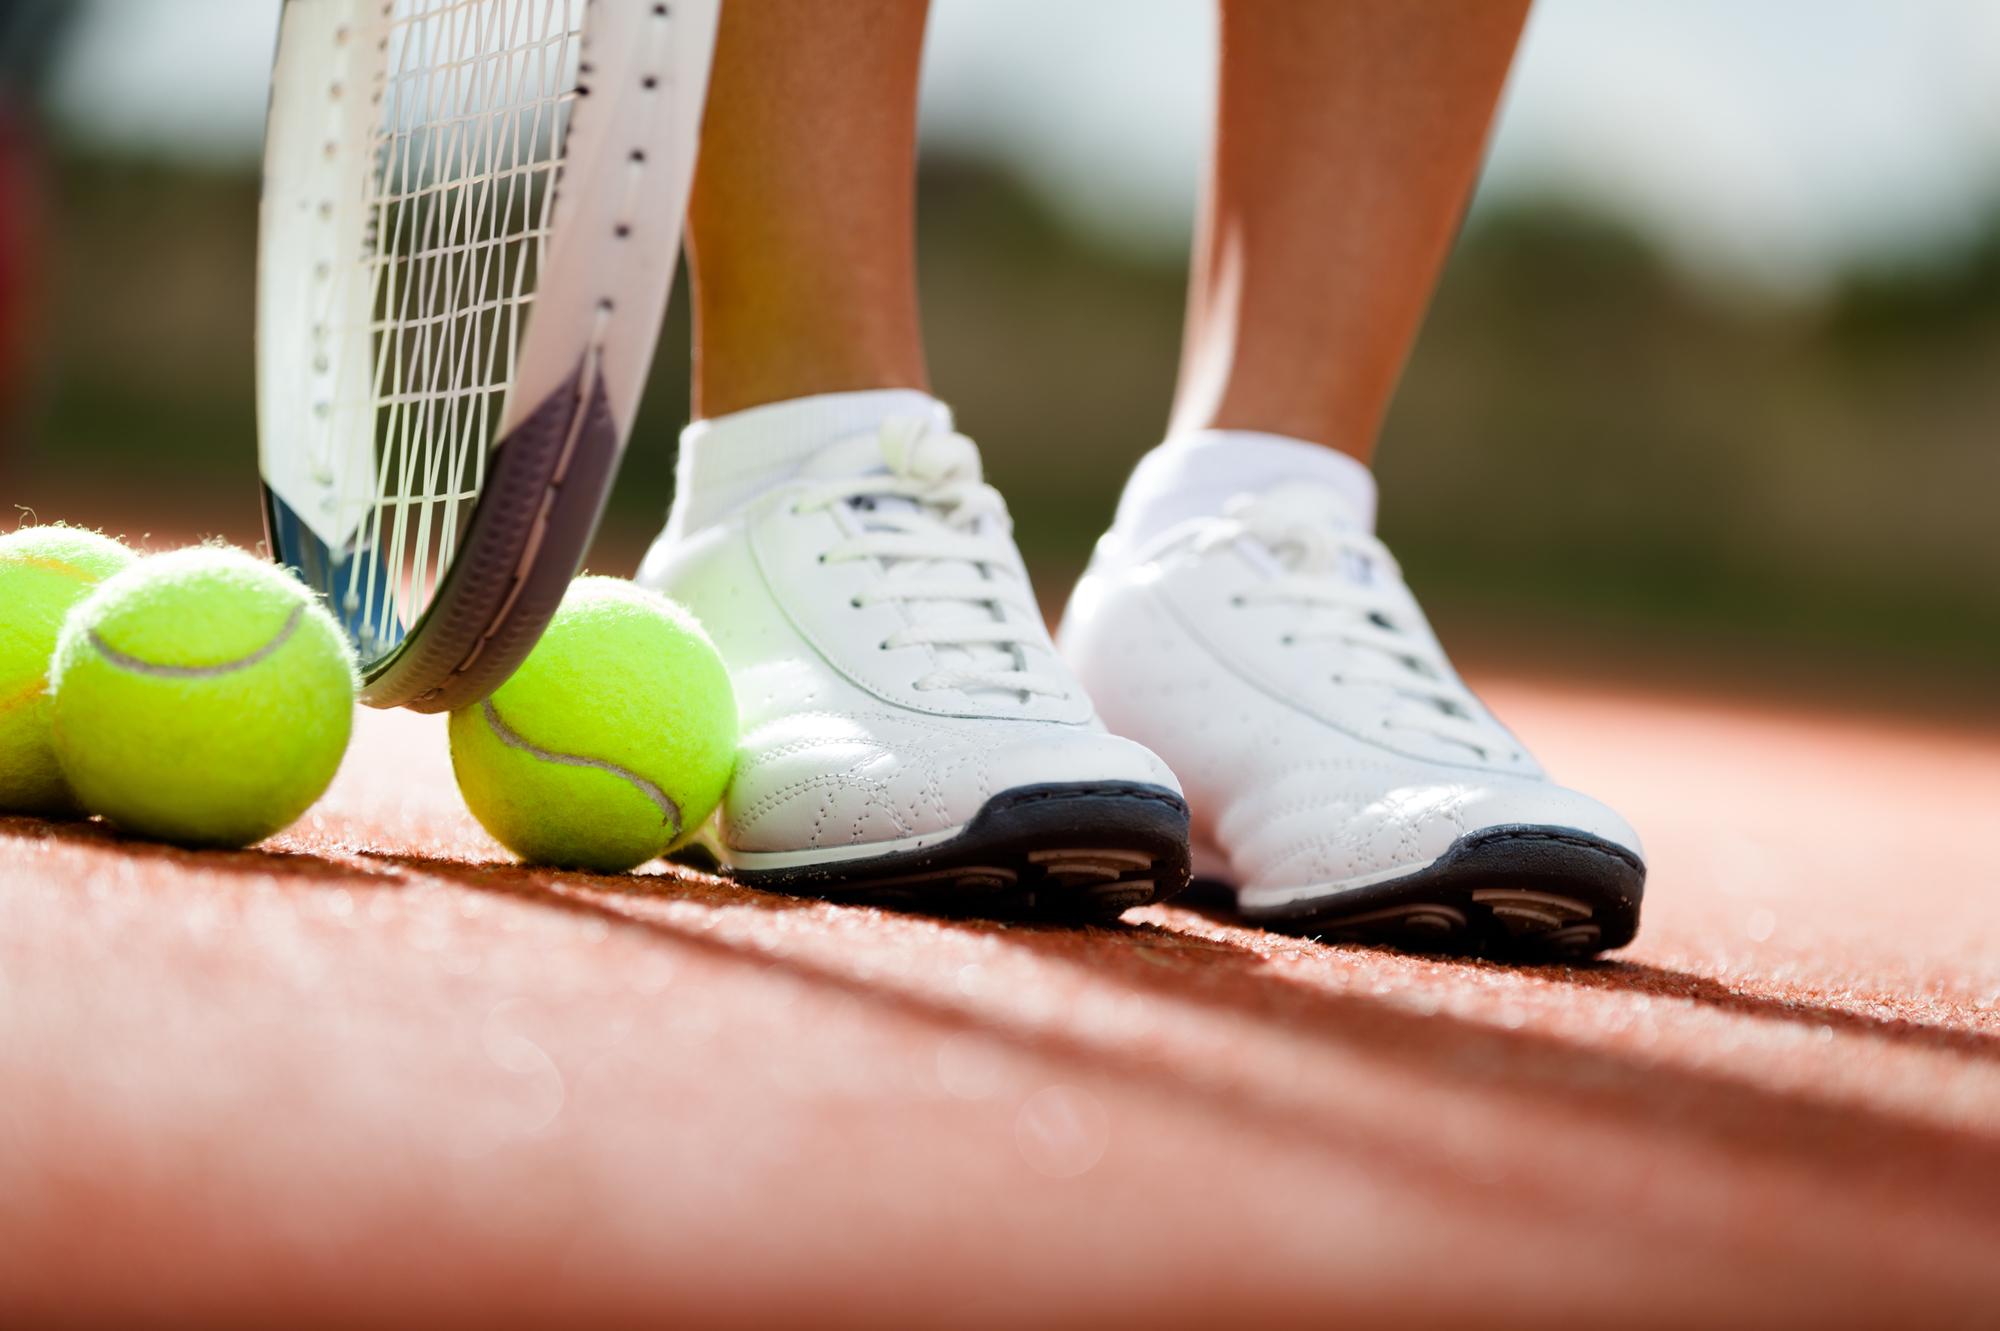 Обувь для тенниса